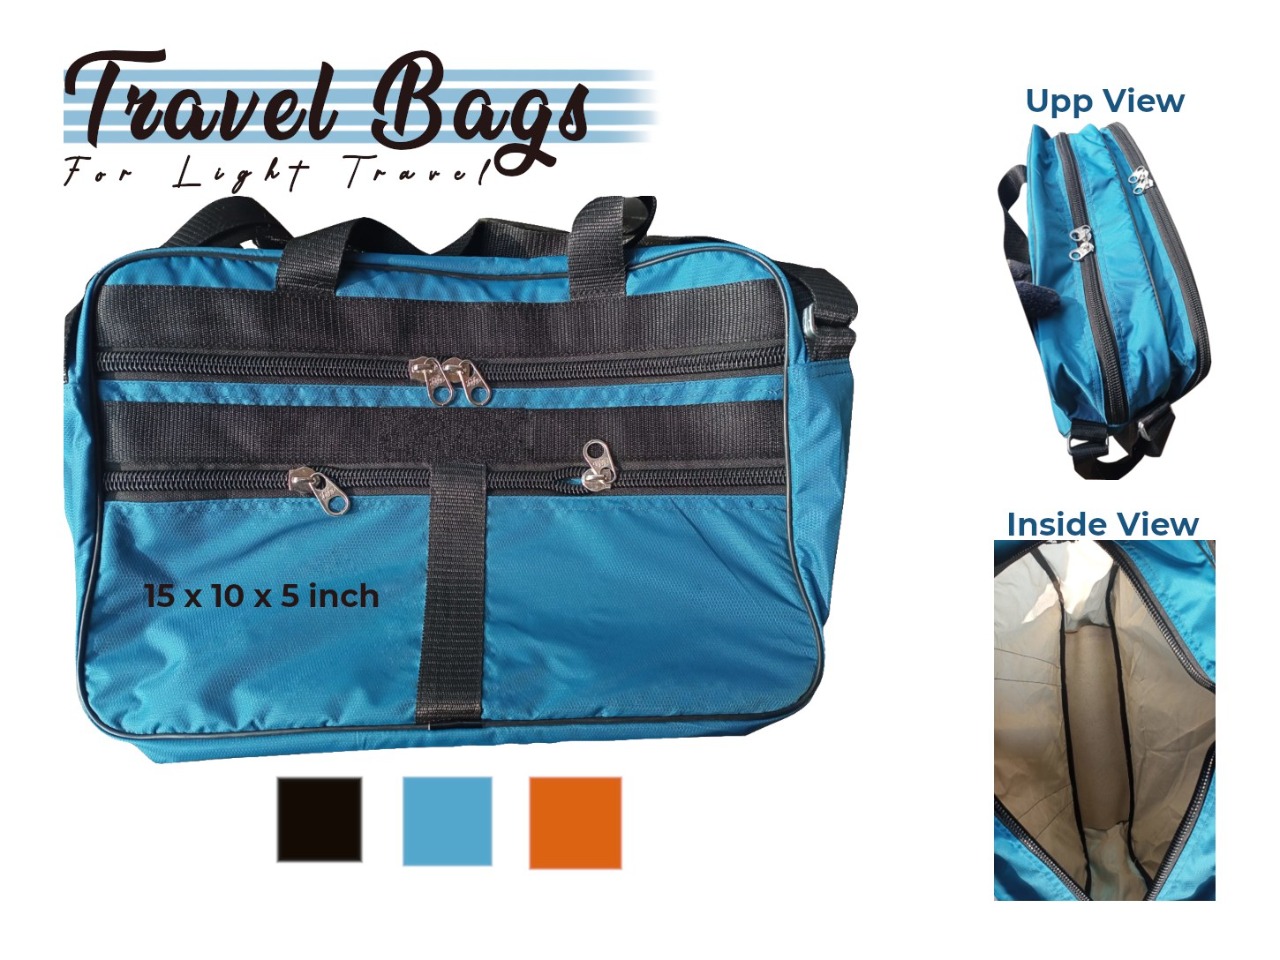 Handmade Travel Bag For Light Travel, Lightweight Travelling Bag - Blue